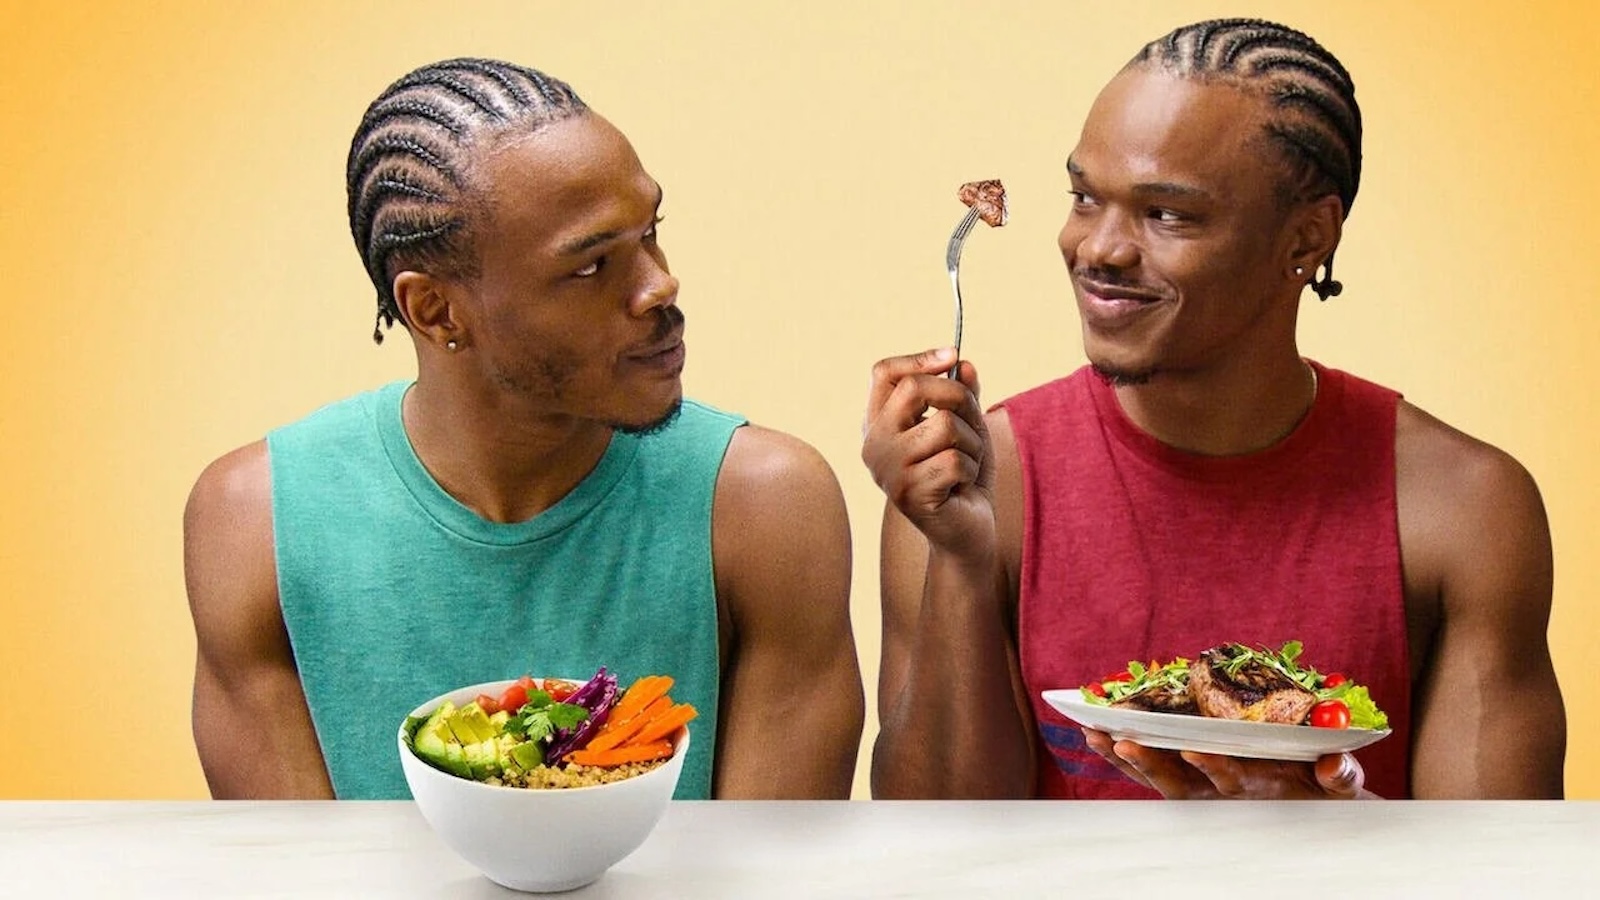 Sei ciò che mangi - gemelli a confronto, la recensione: mens sana in corpore sano (e vegano)